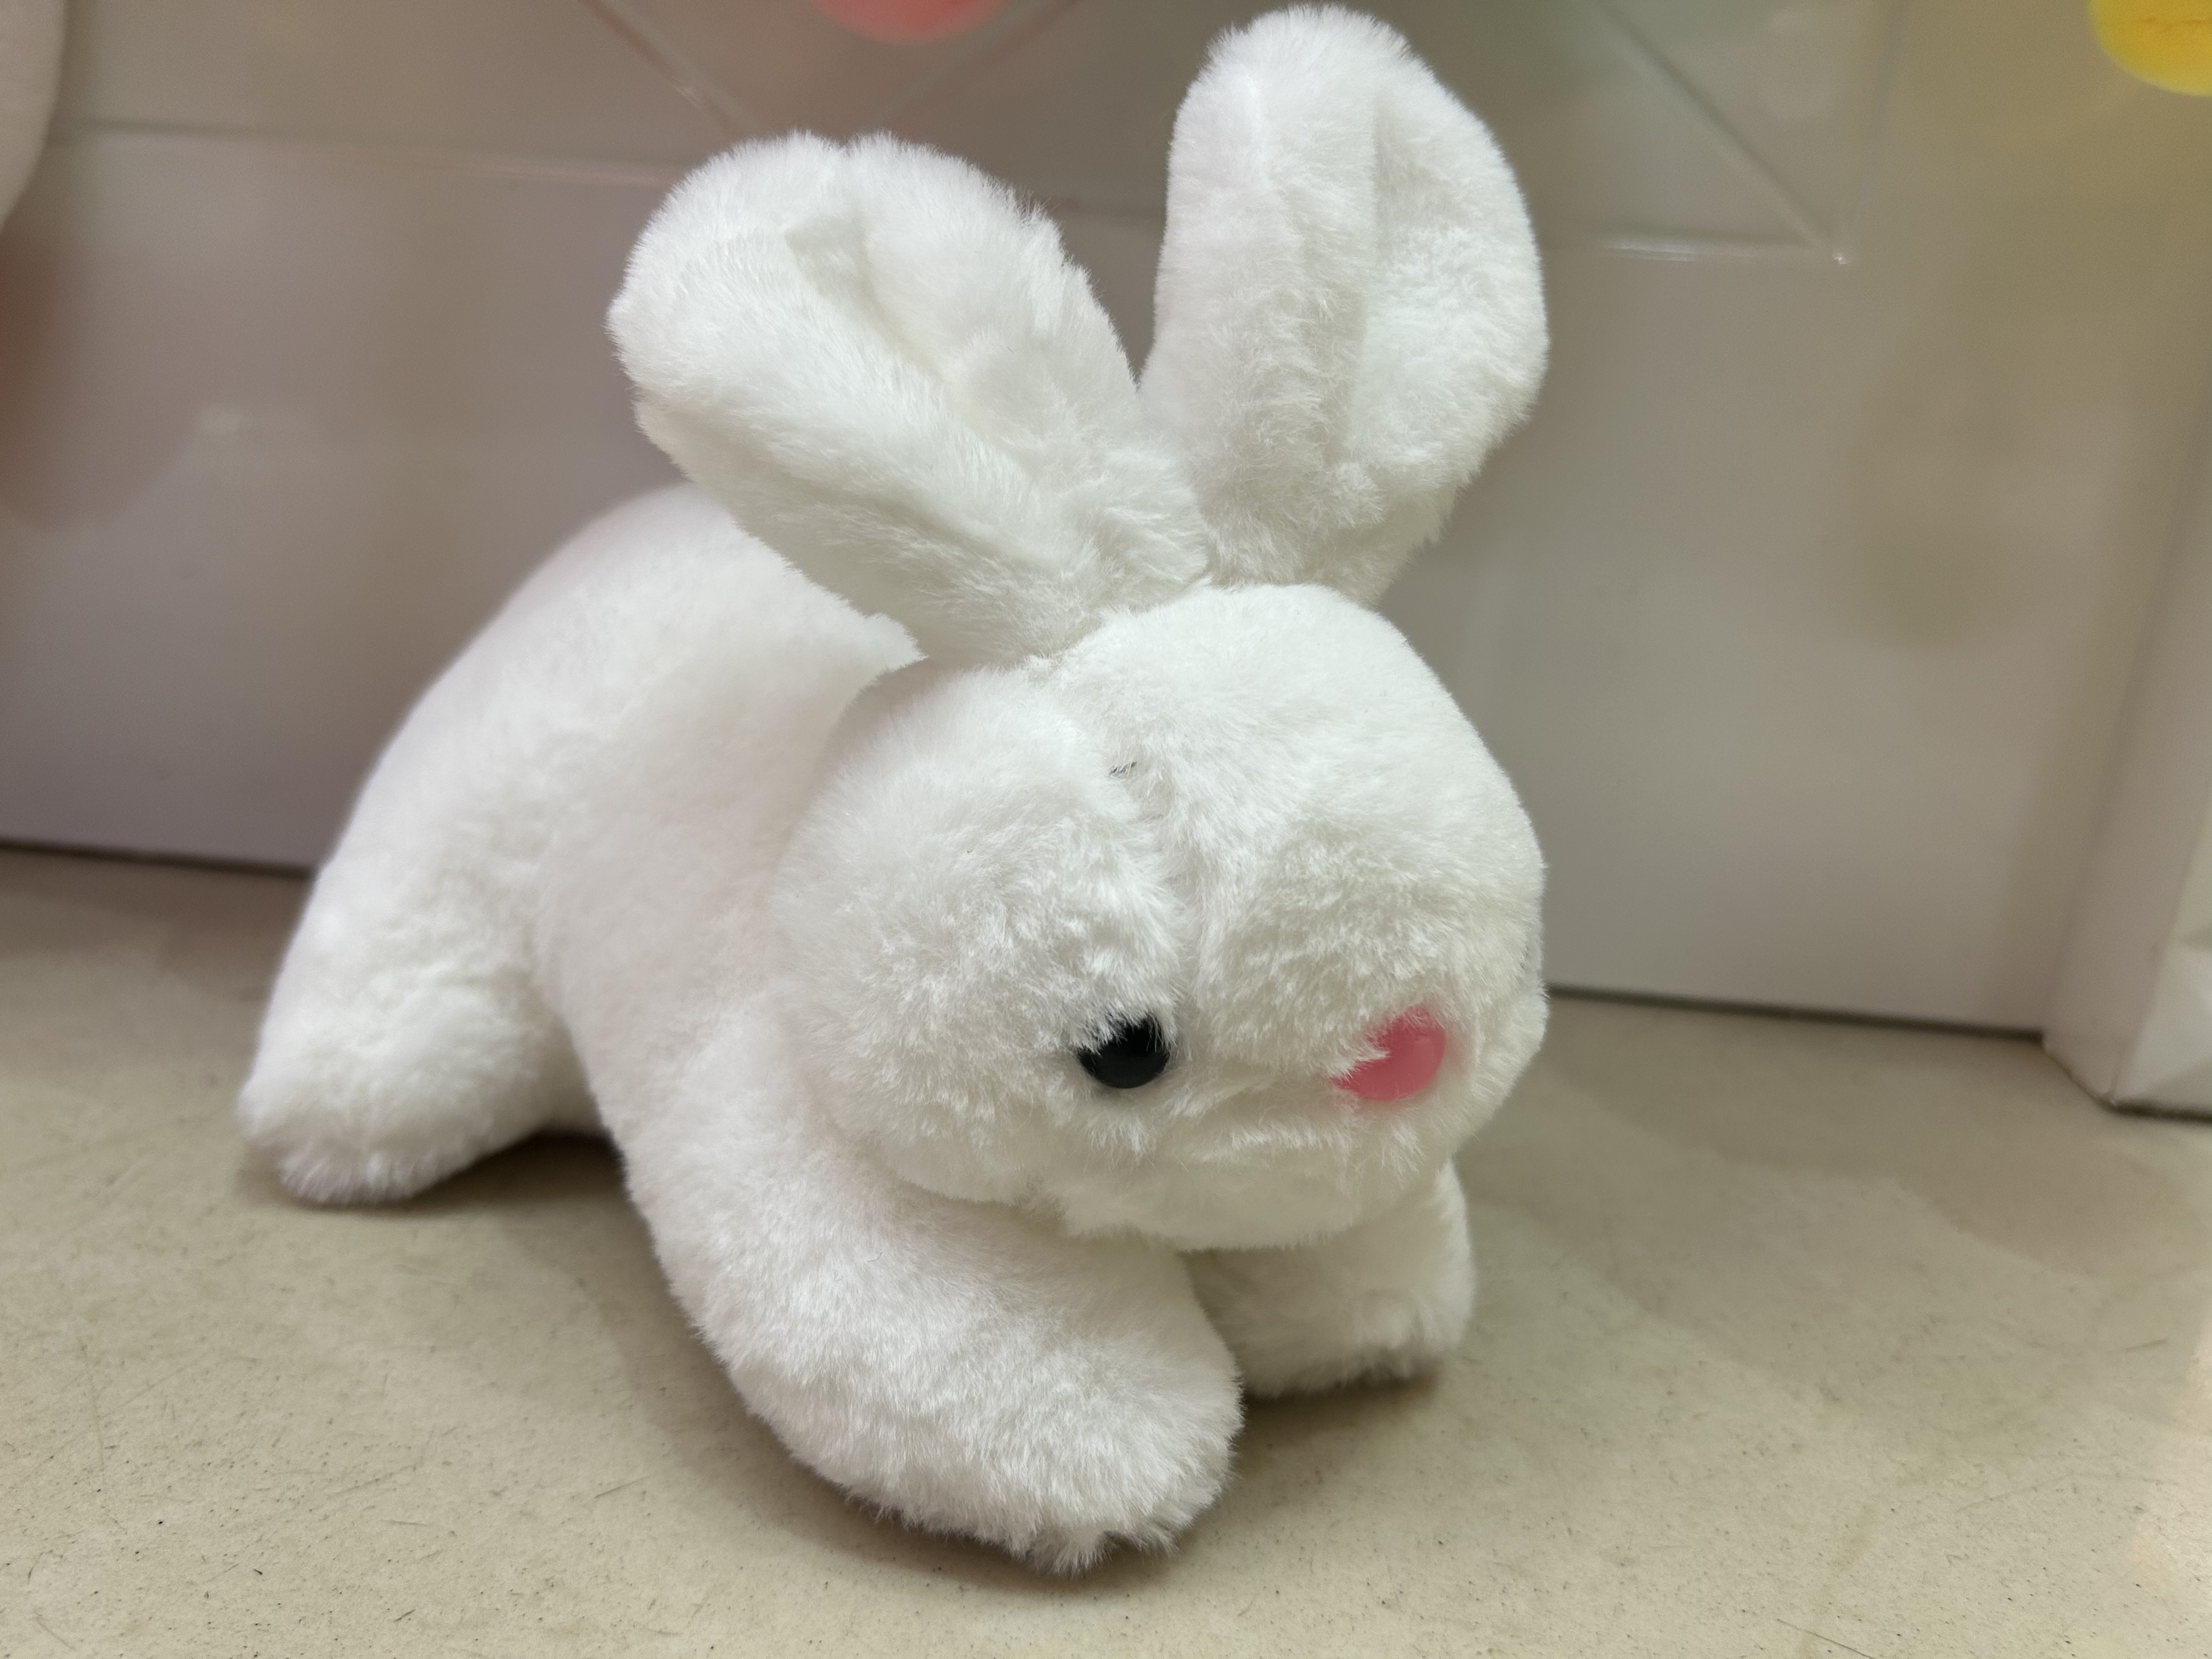 20cm 白色 趴兔 毛绒玩具 公仔玩偶